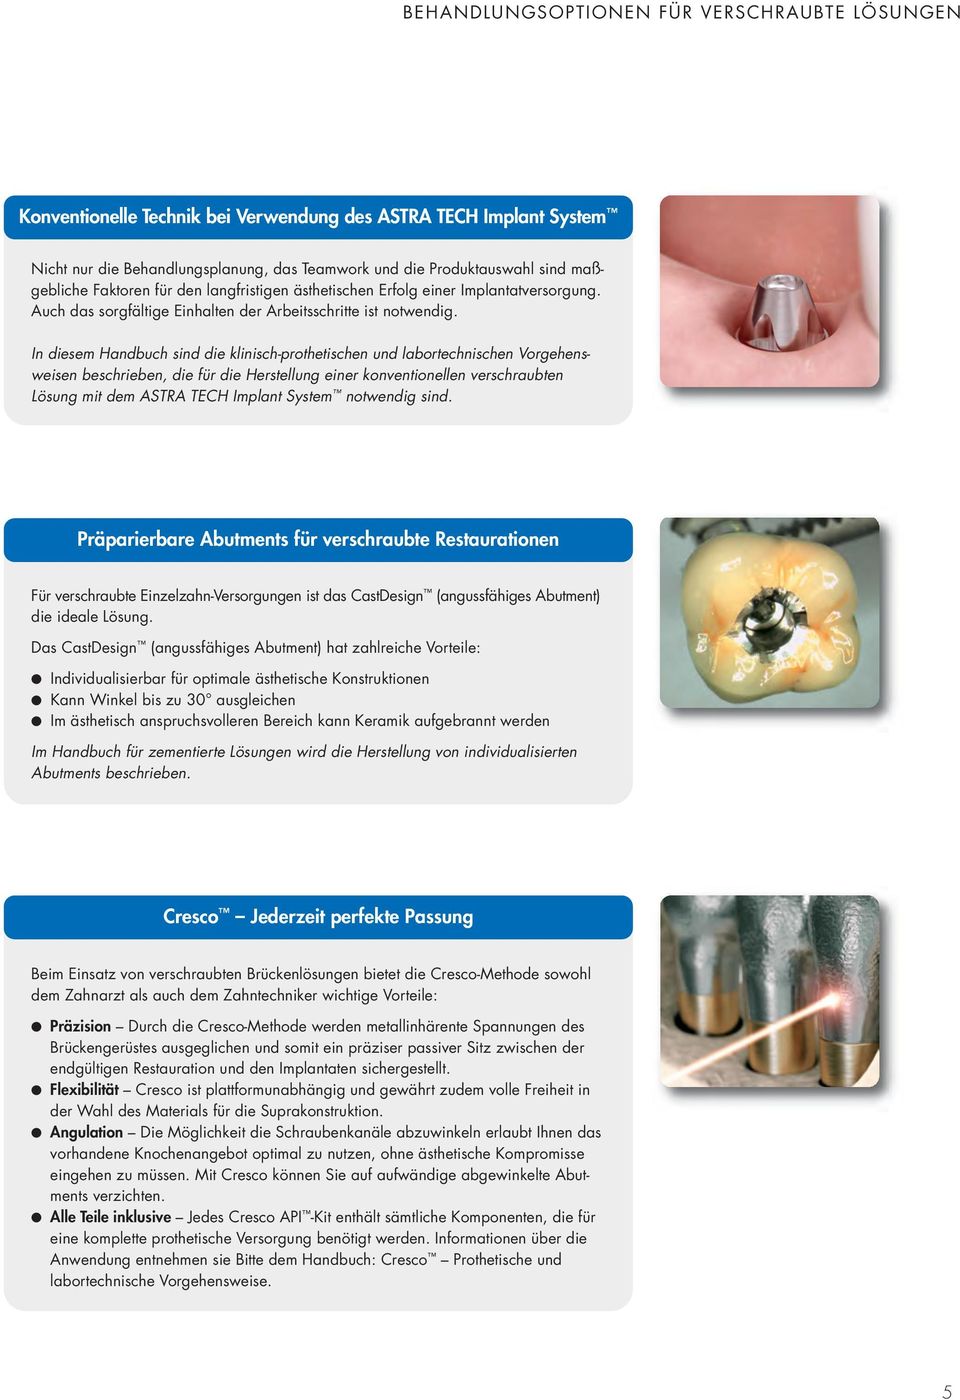 In diesem Handbuch sind die klinisch-prothetischen und labortechnischen Vorgehensweisen beschrieben, die für die Herstellung einer konventionellen verschraubten Lösung mit dem ASTRA TECH Implant